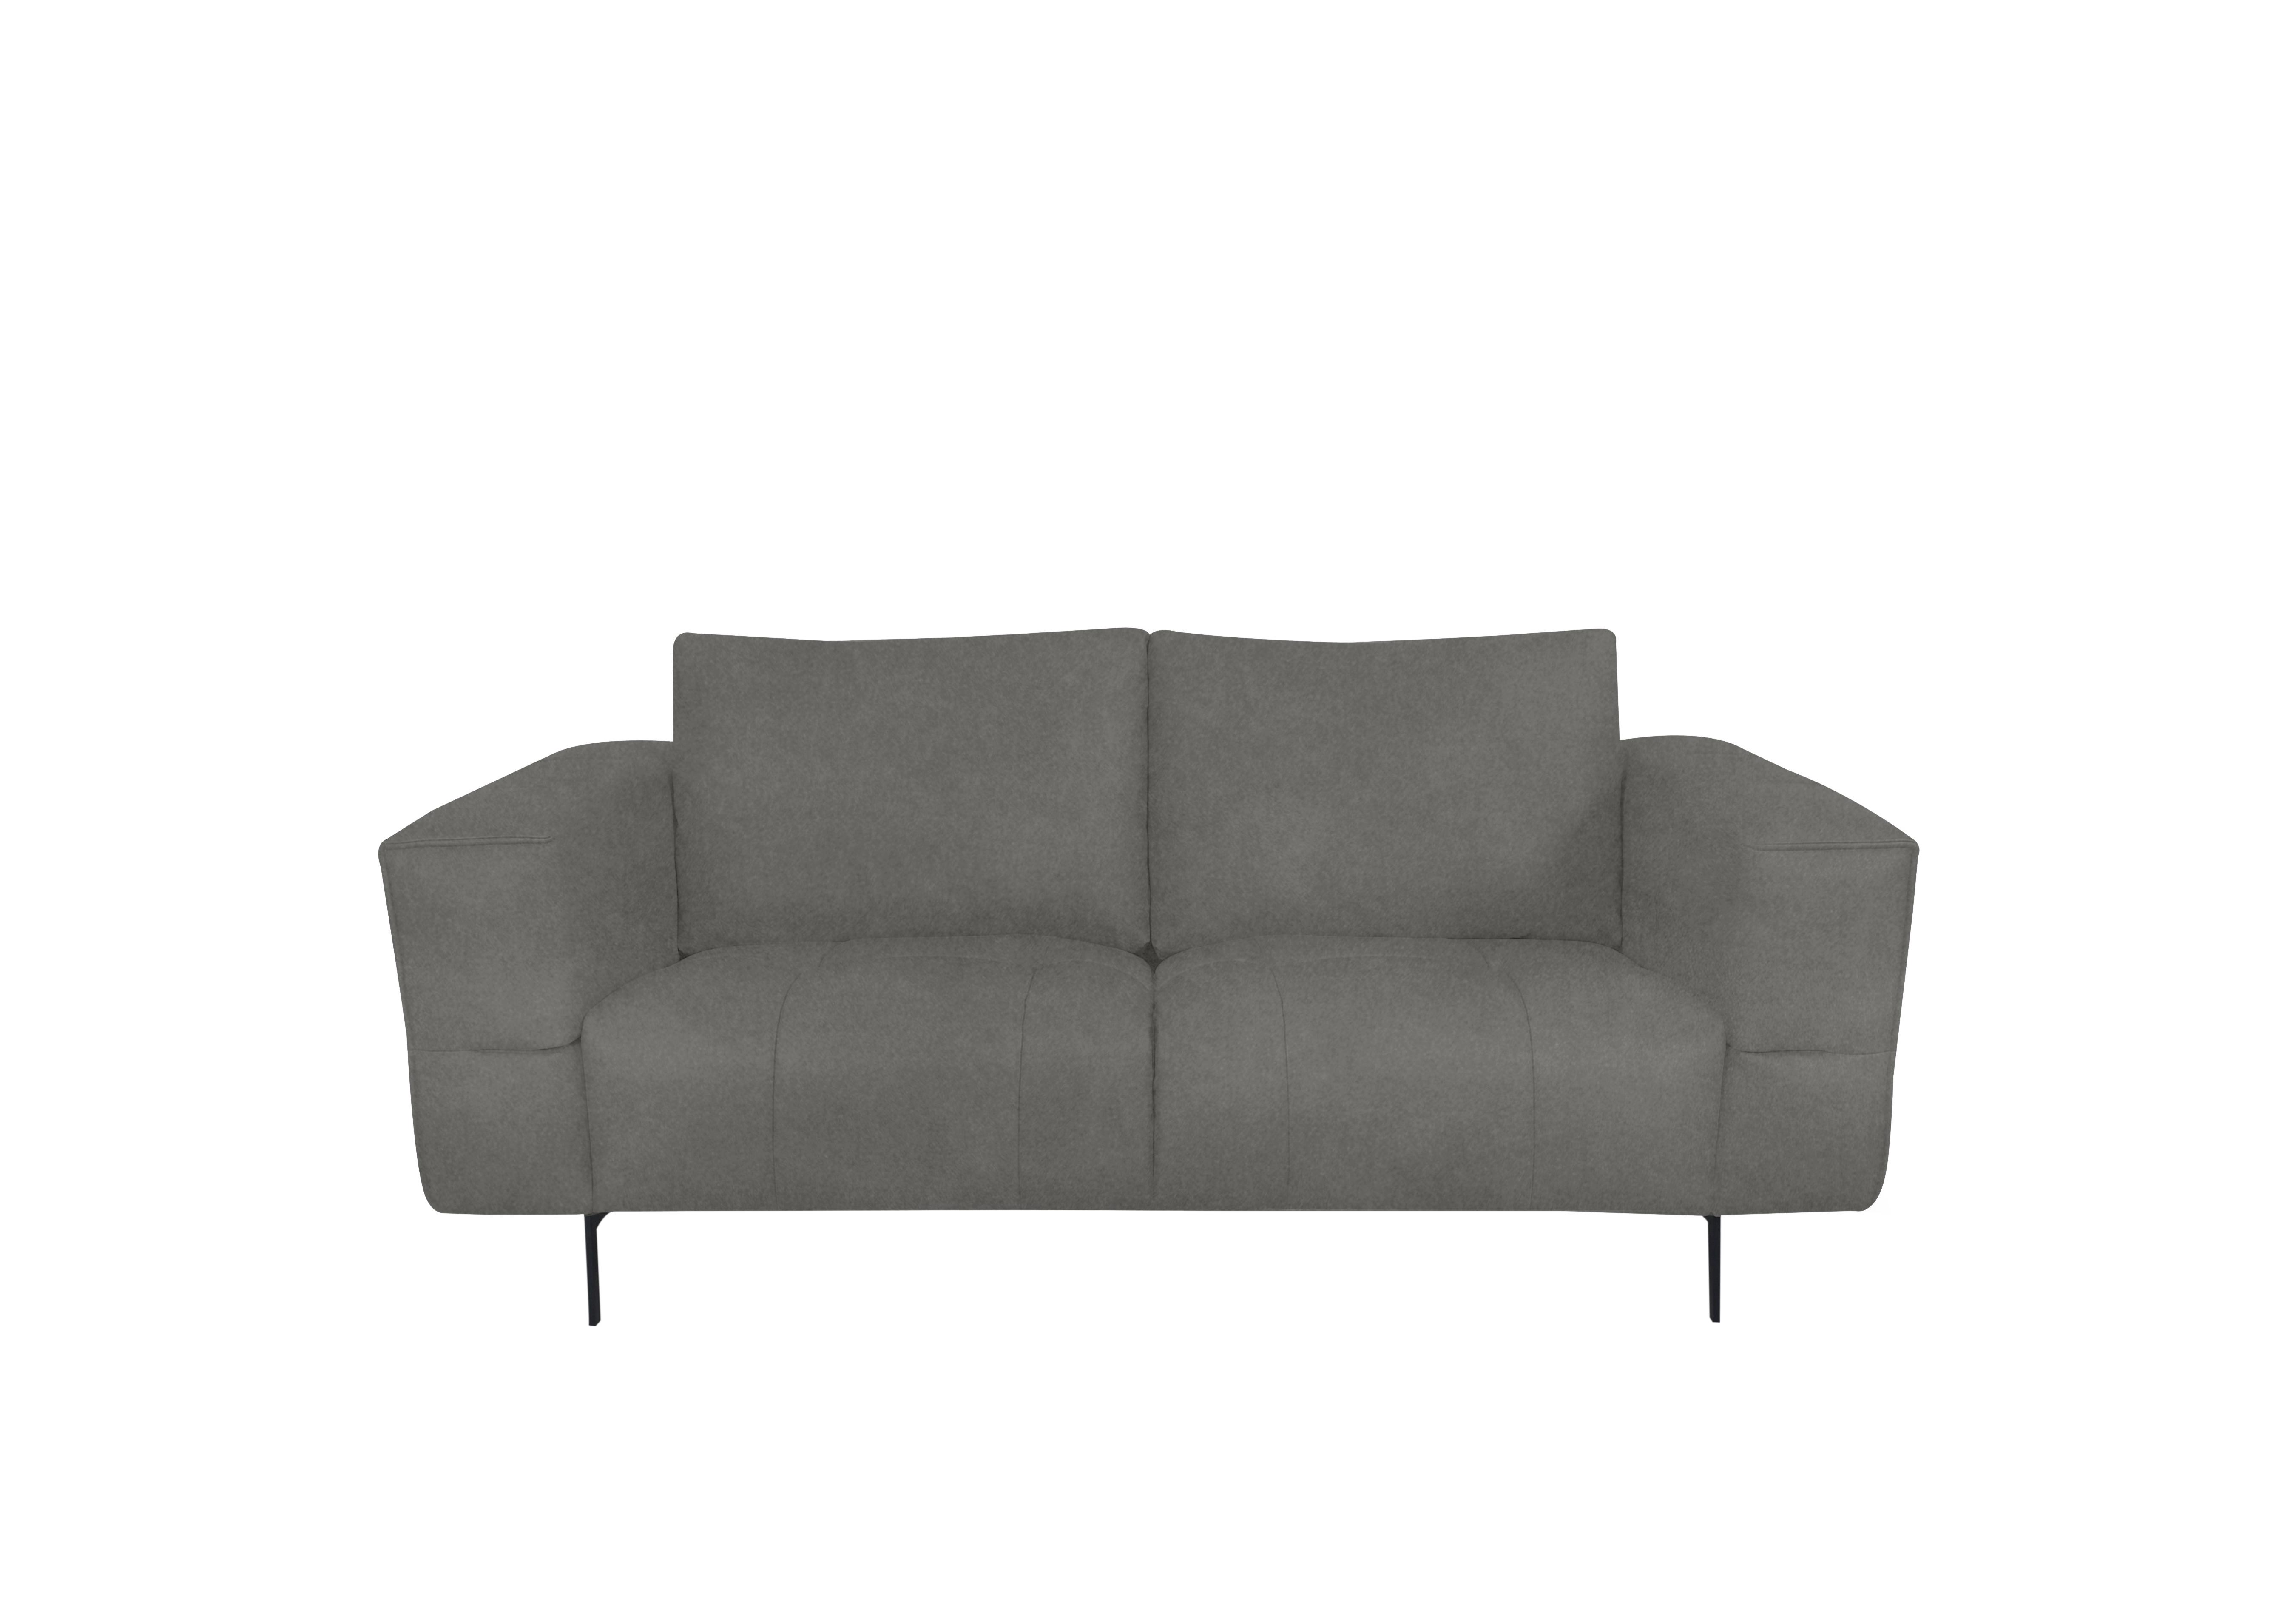 Lawson 2 Seater Fabric Sofa in Fab-Meg-R40 Silver Grey on Furniture Village